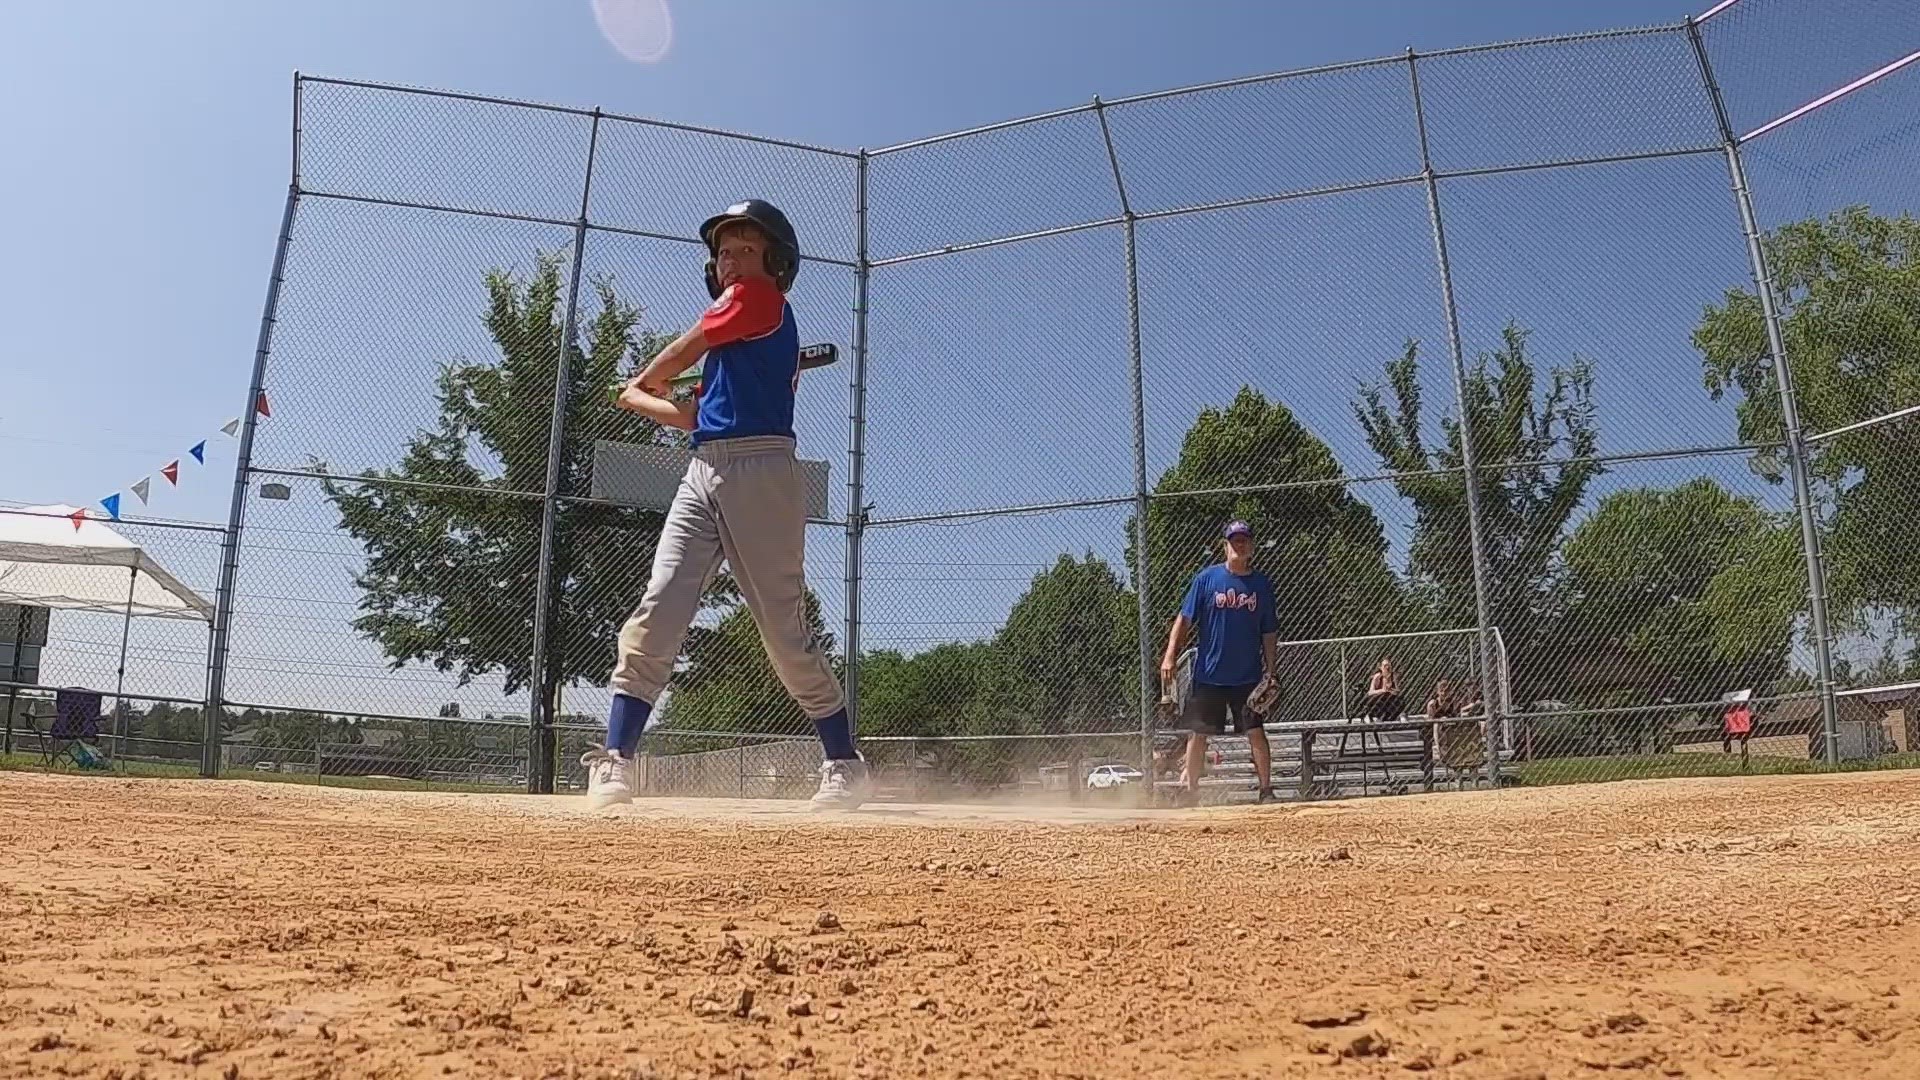 Iowa Baseball Camp for the Deaf helps deaf, hard of hearing kids